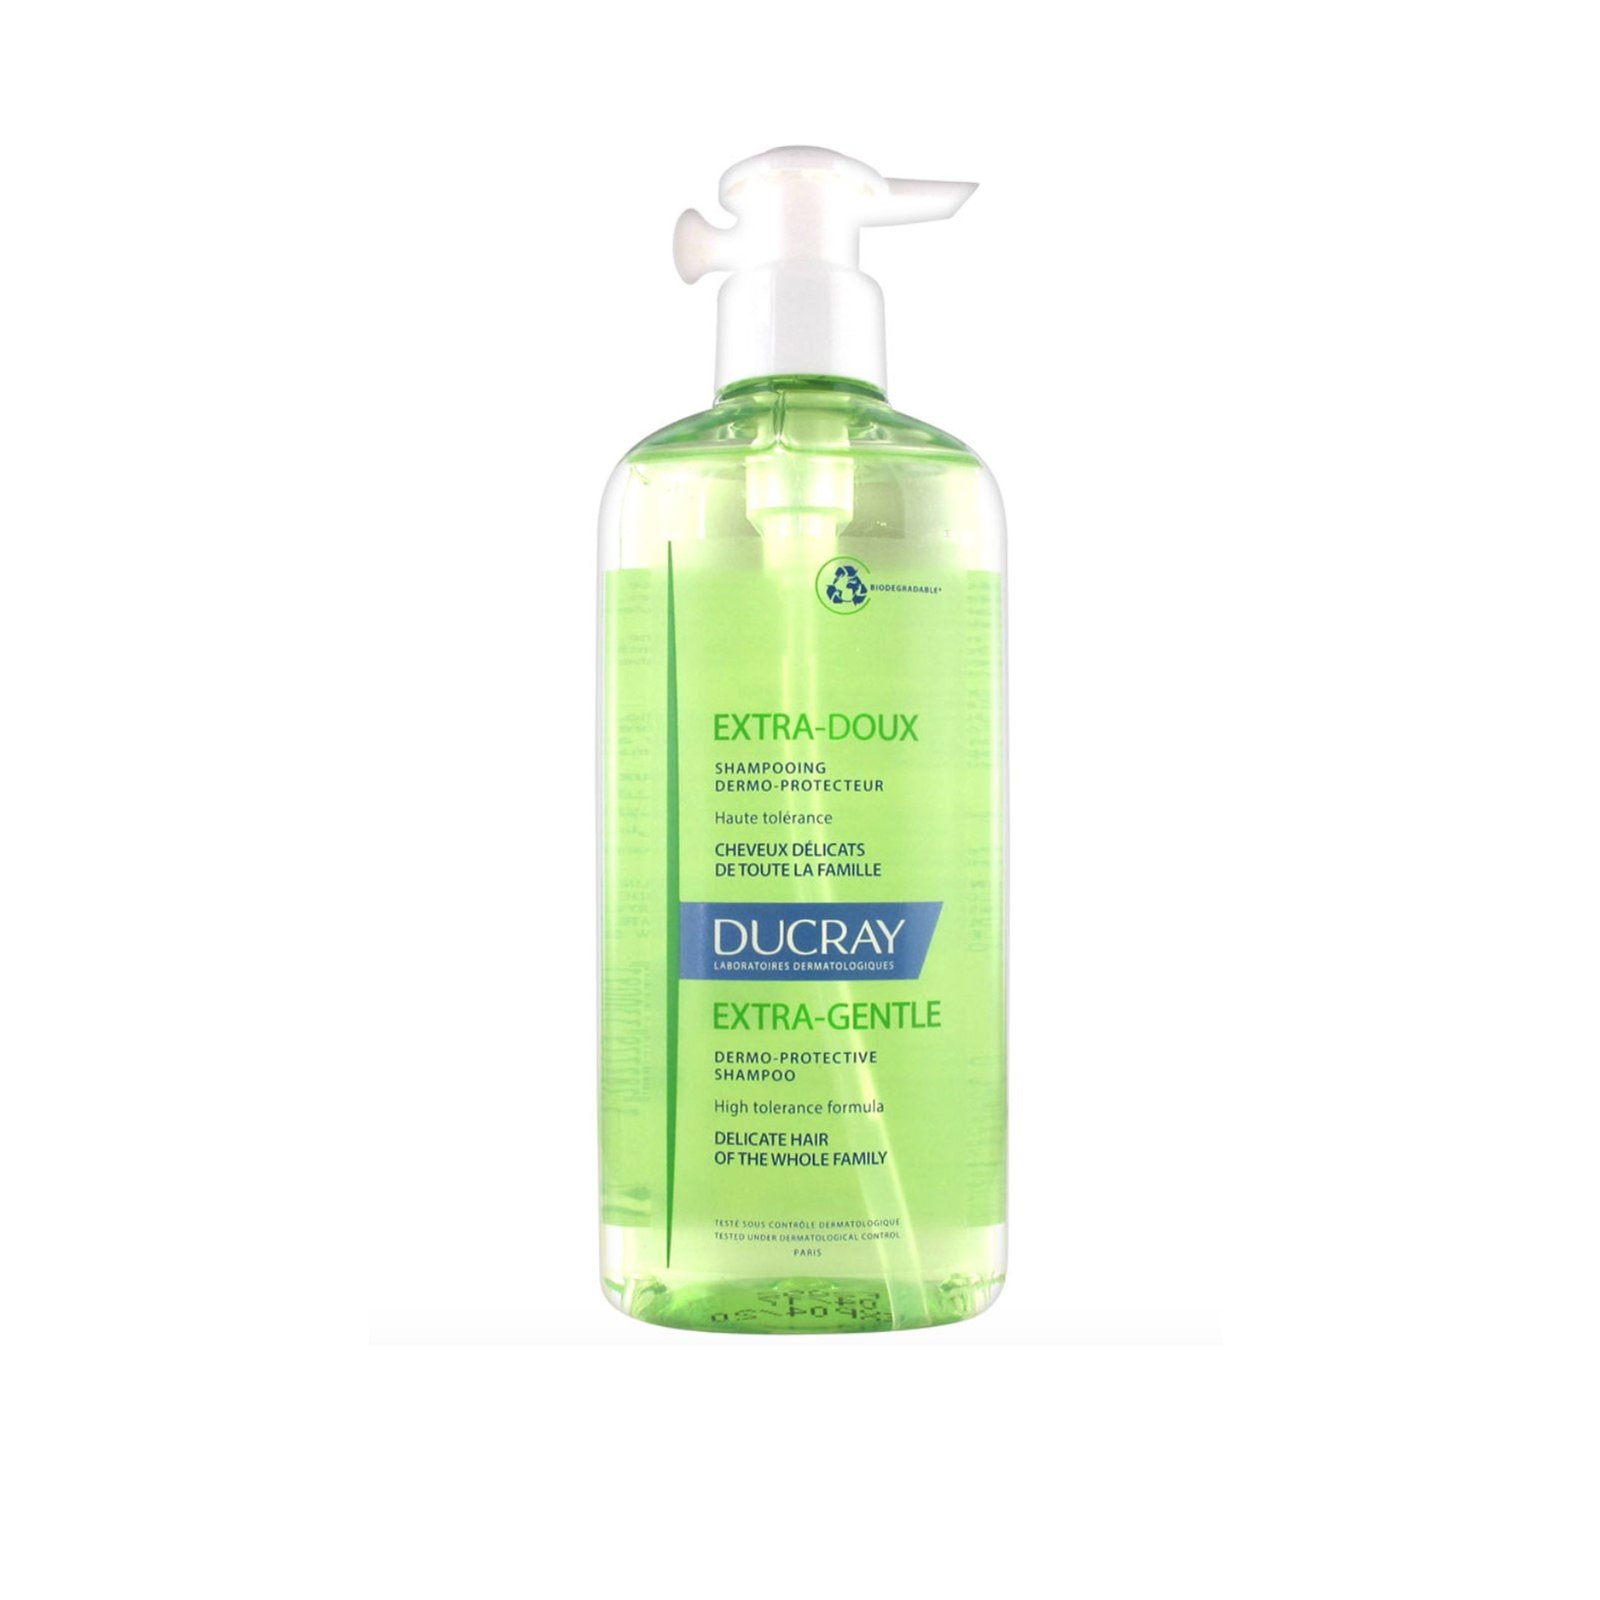 Ducray Extra-Doux Dermo-Protective Shampoo 400ml (13.53fl oz)